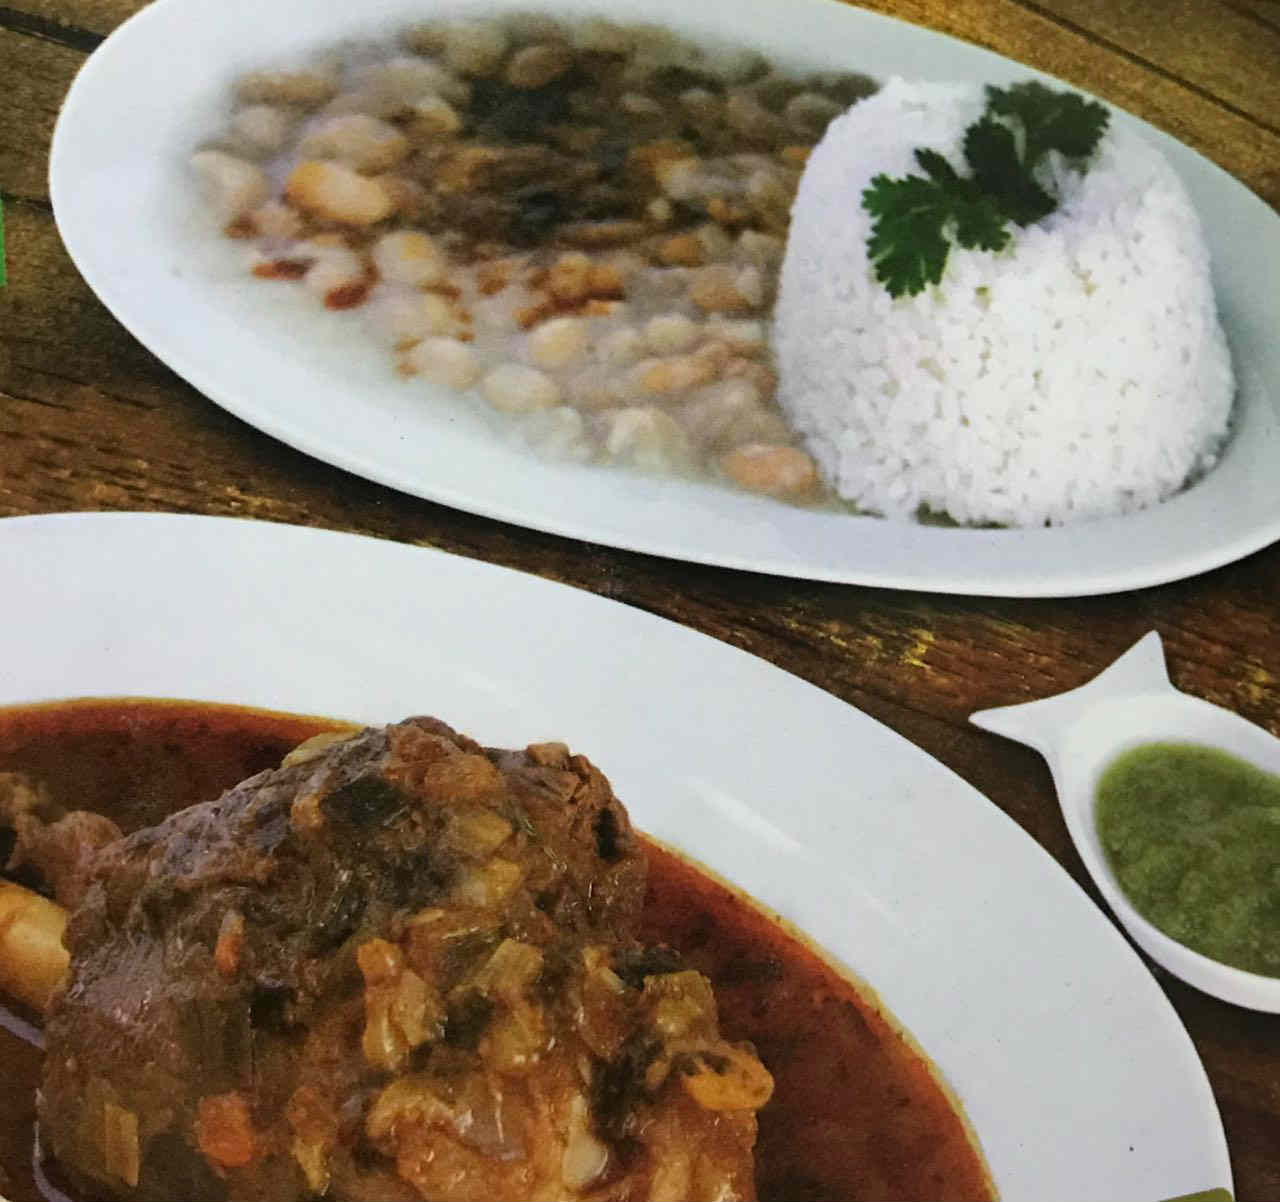 Dos platos de comida servida en una mesa